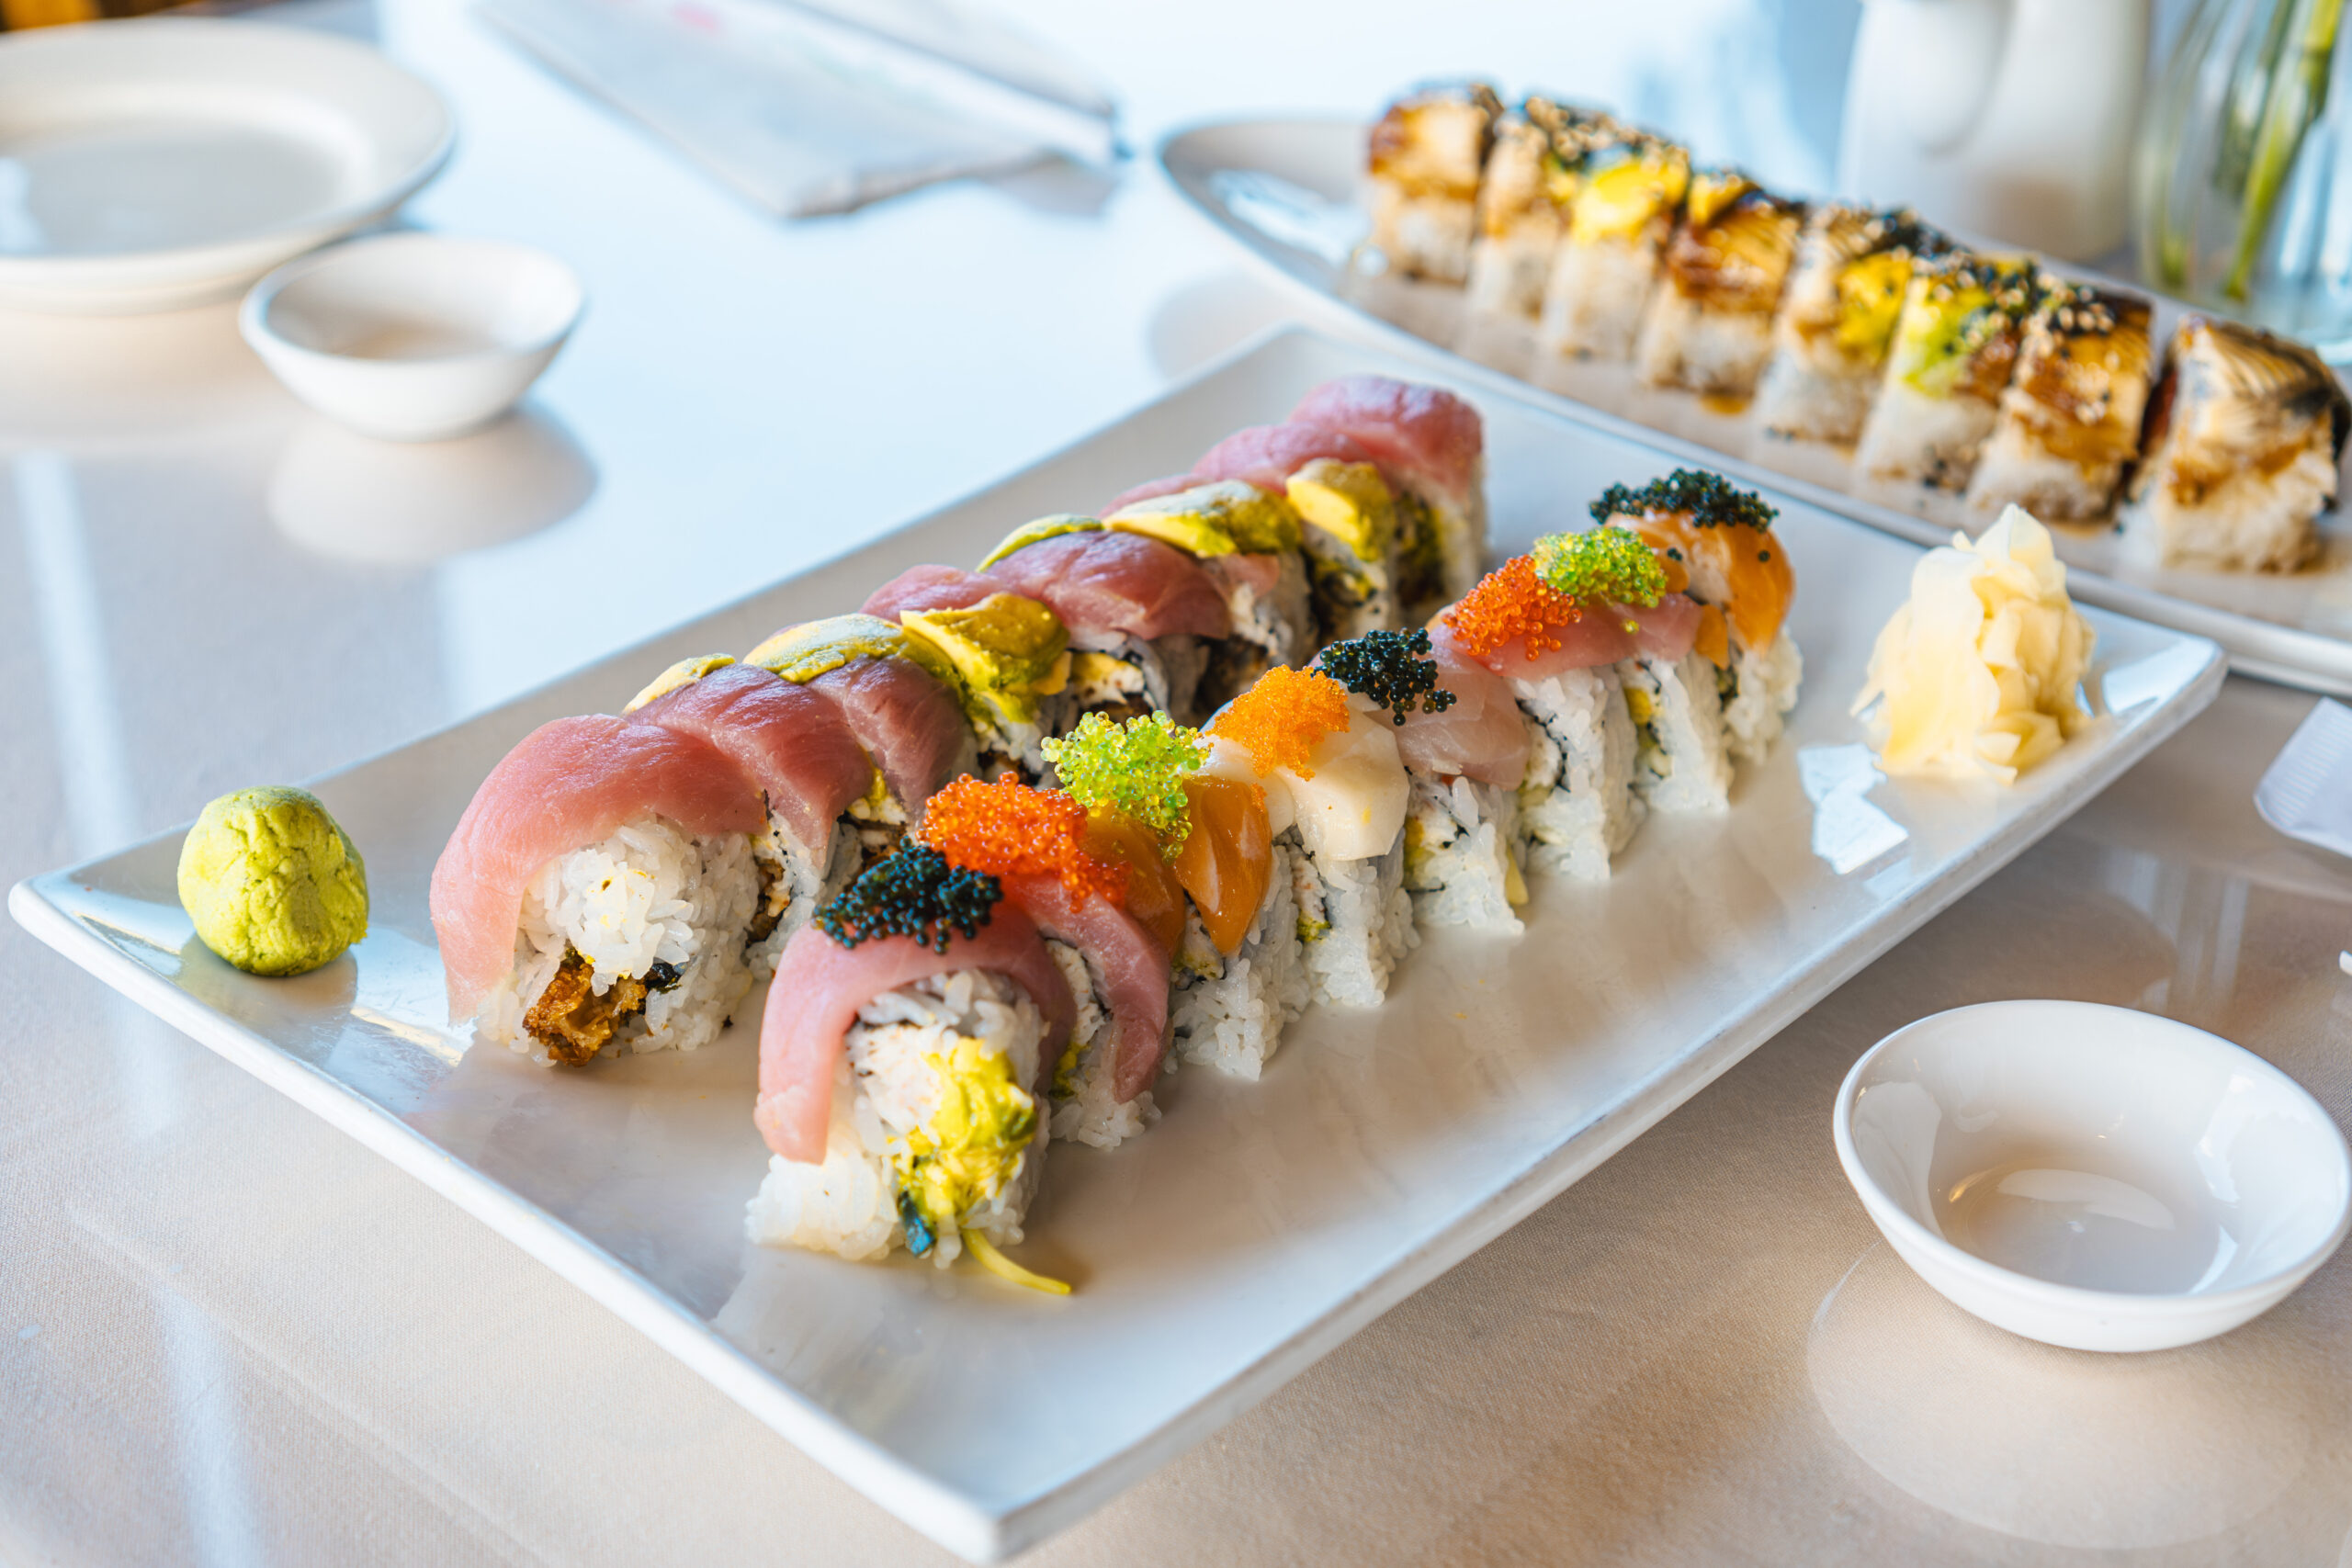 A sushi roll at Tokyo Seoul in Pullman Washington